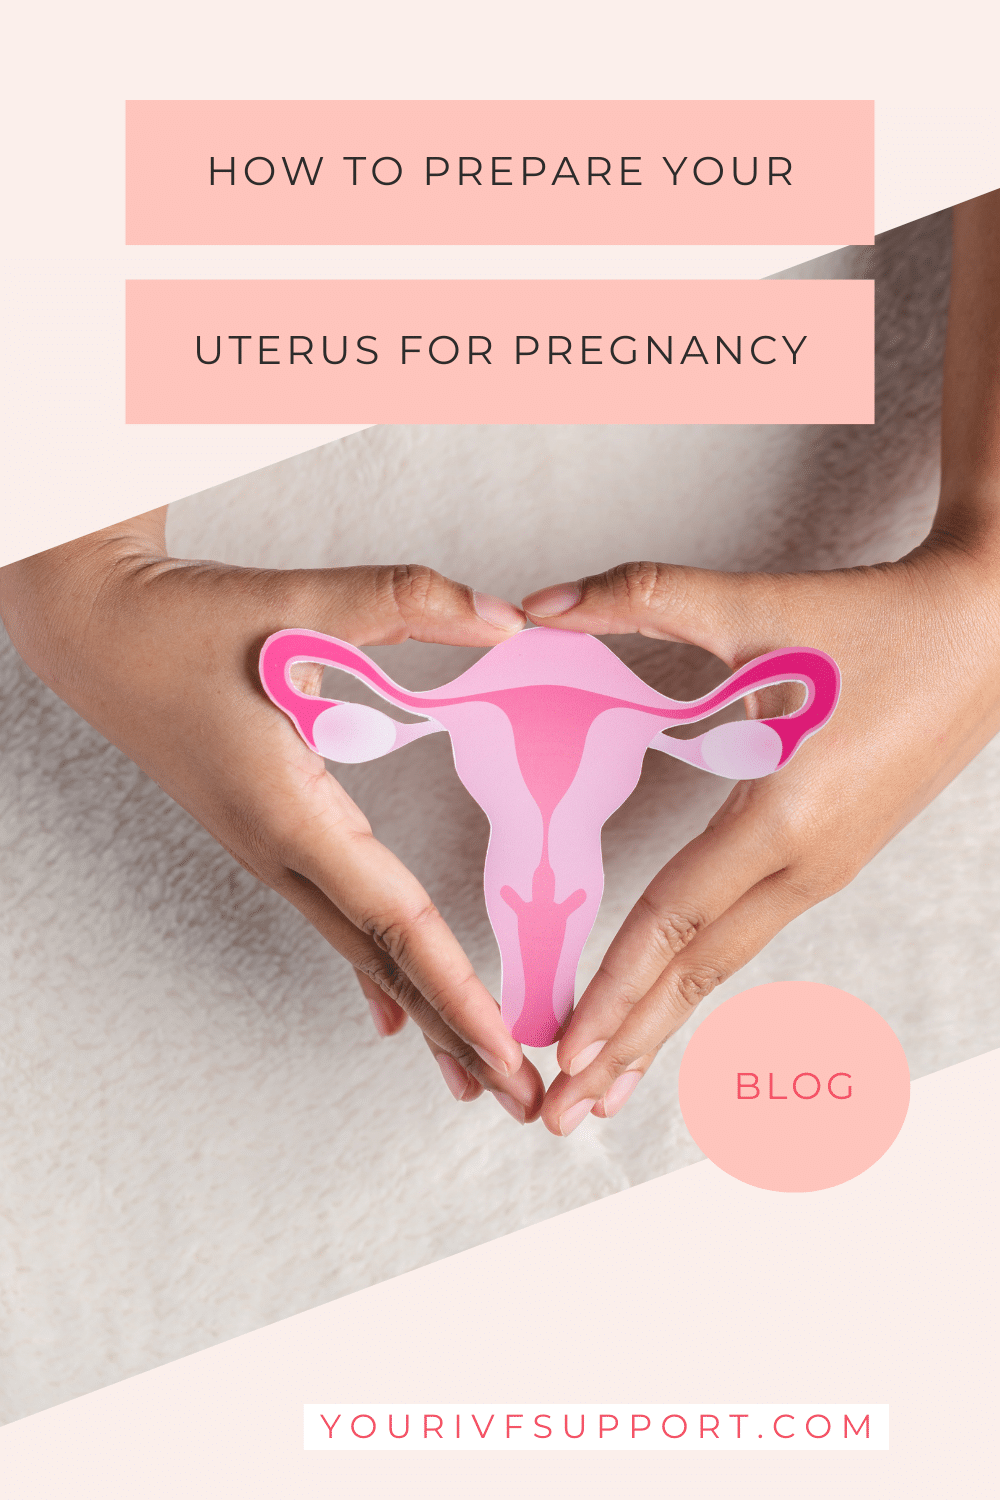 Preparing Your Uterus for Pregnancy